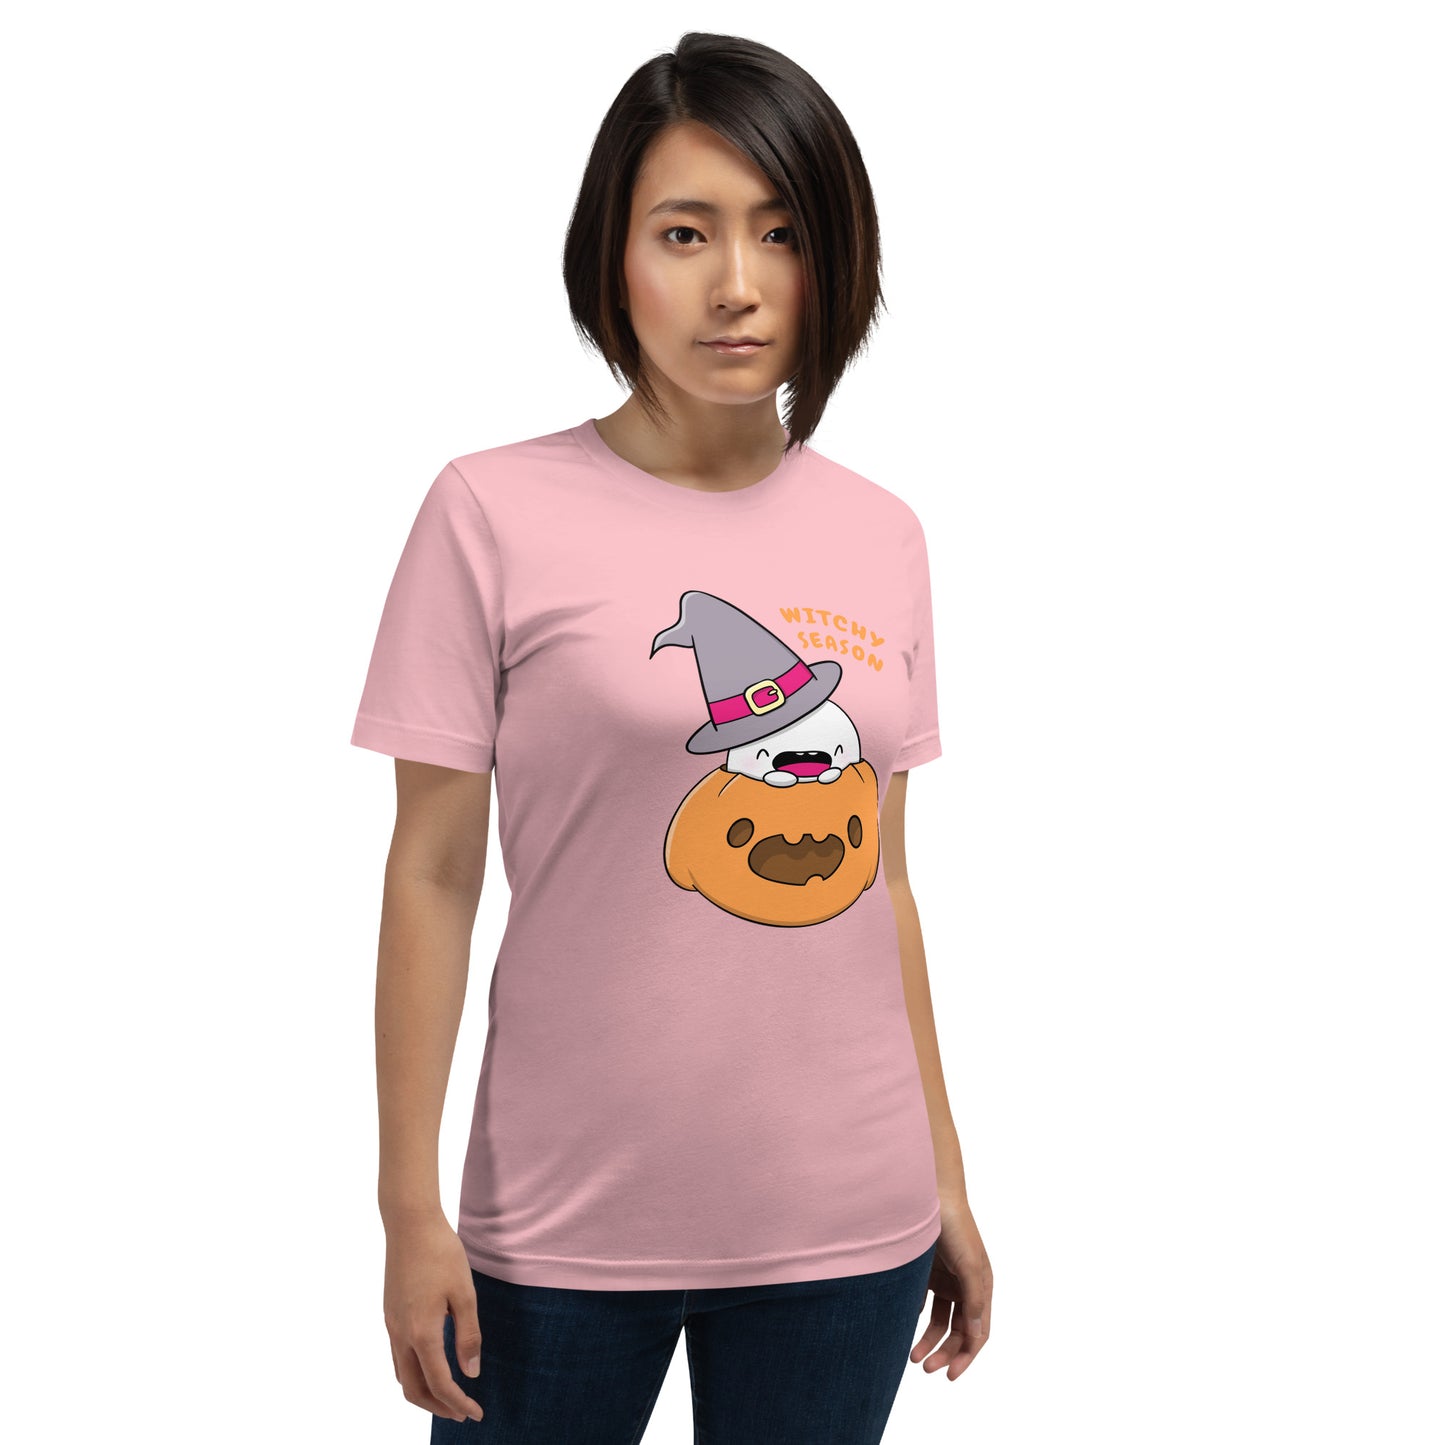 Witchy season - Unisex t-shirt